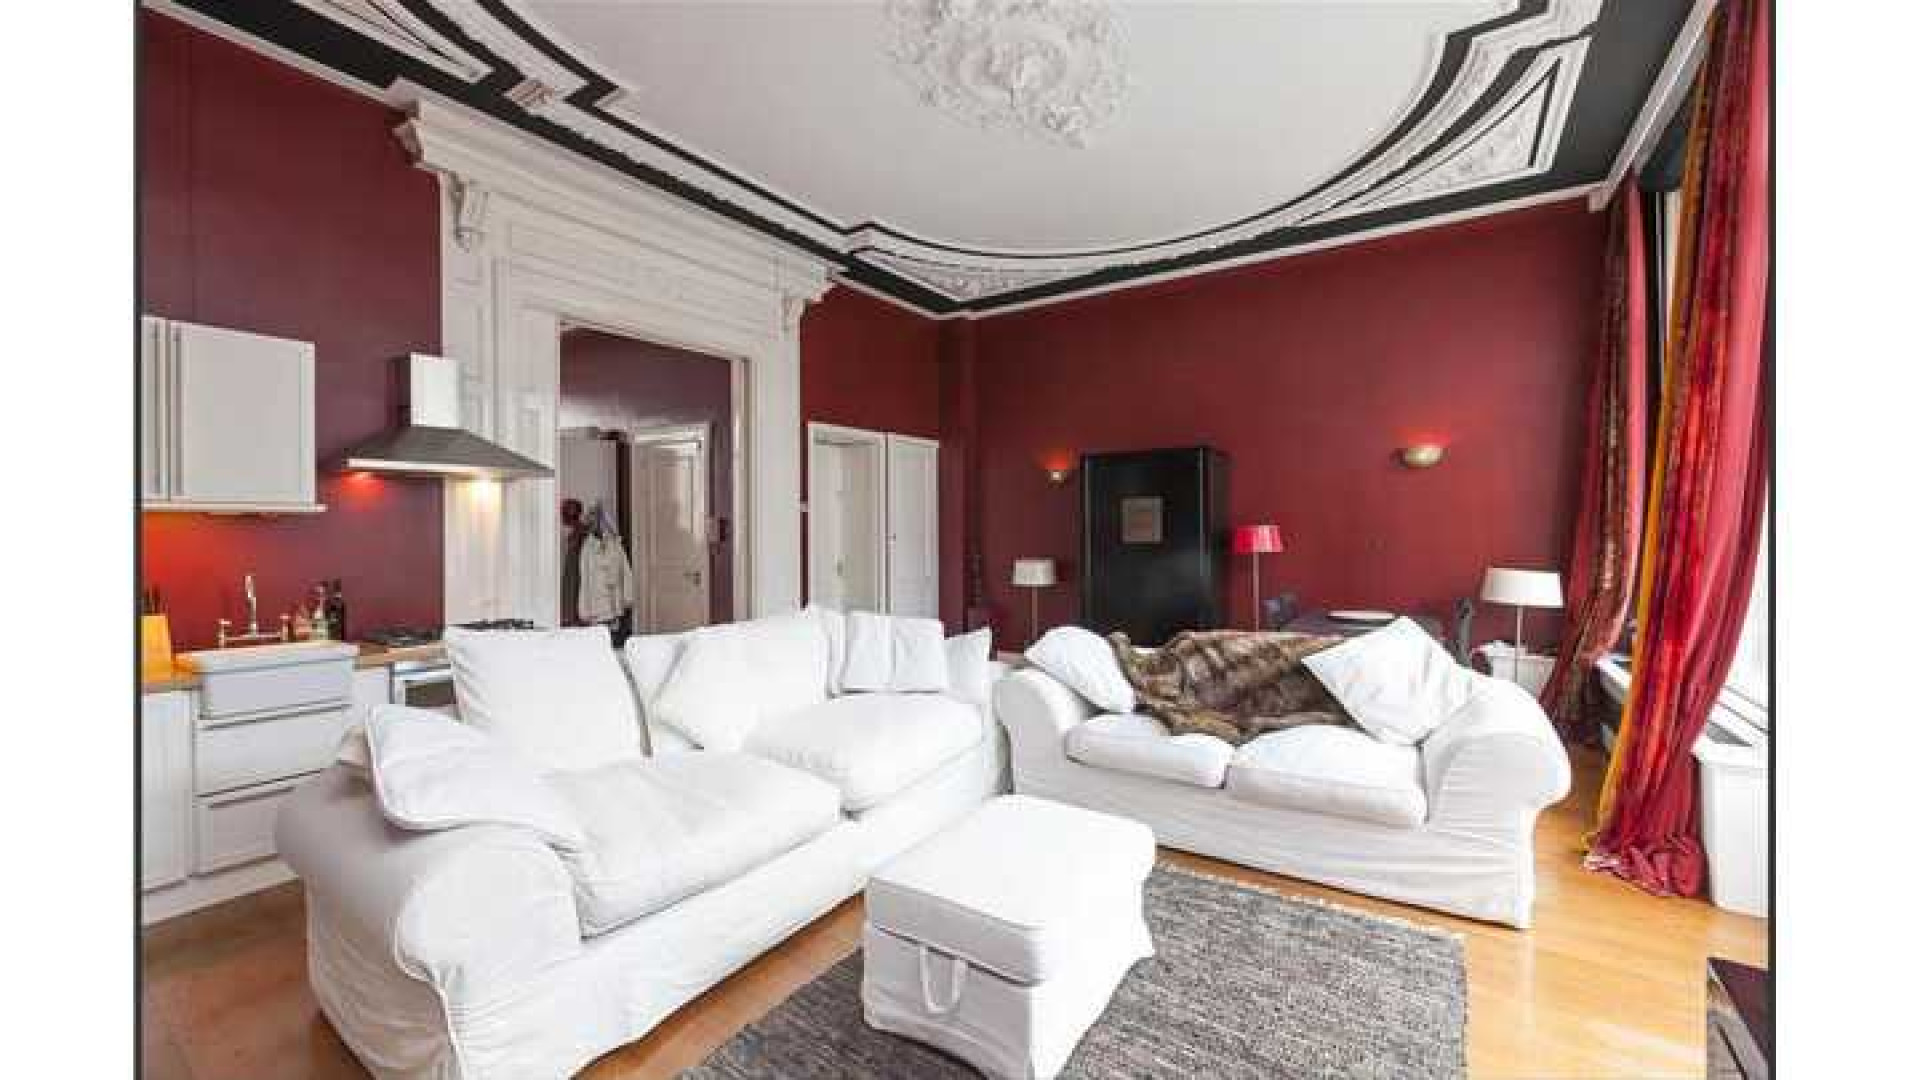 Trijnte Oosterhuis en haar ex zetten hun luxe Amsterdamse appartement te koop. Zie foto's 6